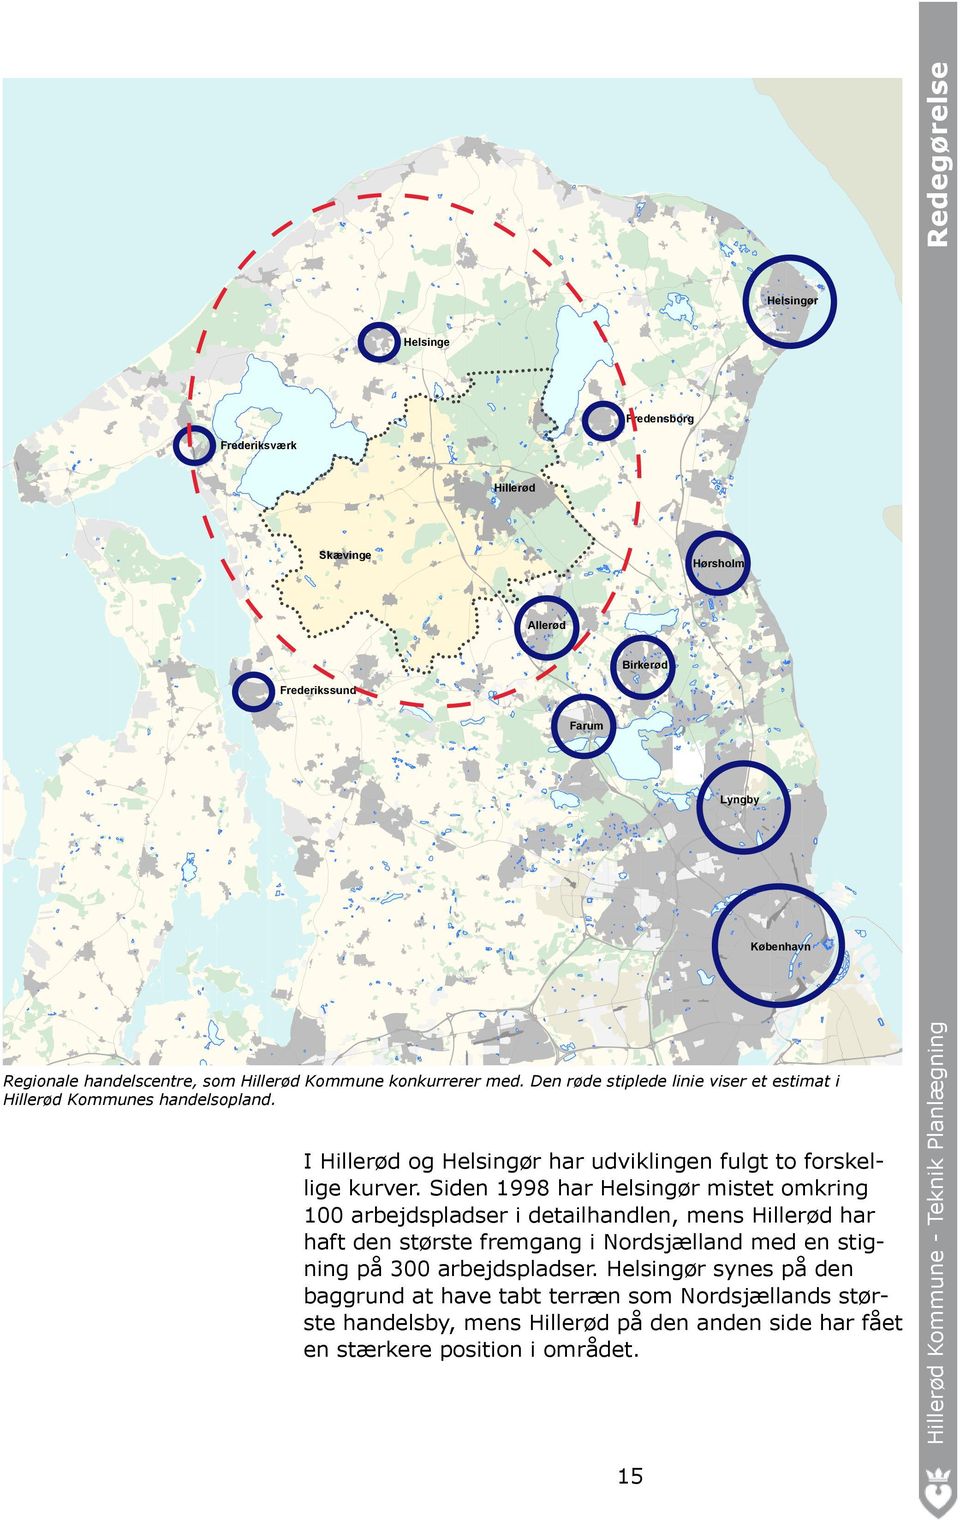 Siden 1998 har Helsingør mistet omkring 100 arbejdspladser i detailhandlen, mens Hillerød har haft den største fremgang i Nordsjælland med en stigning på 300 arbejdspladser.